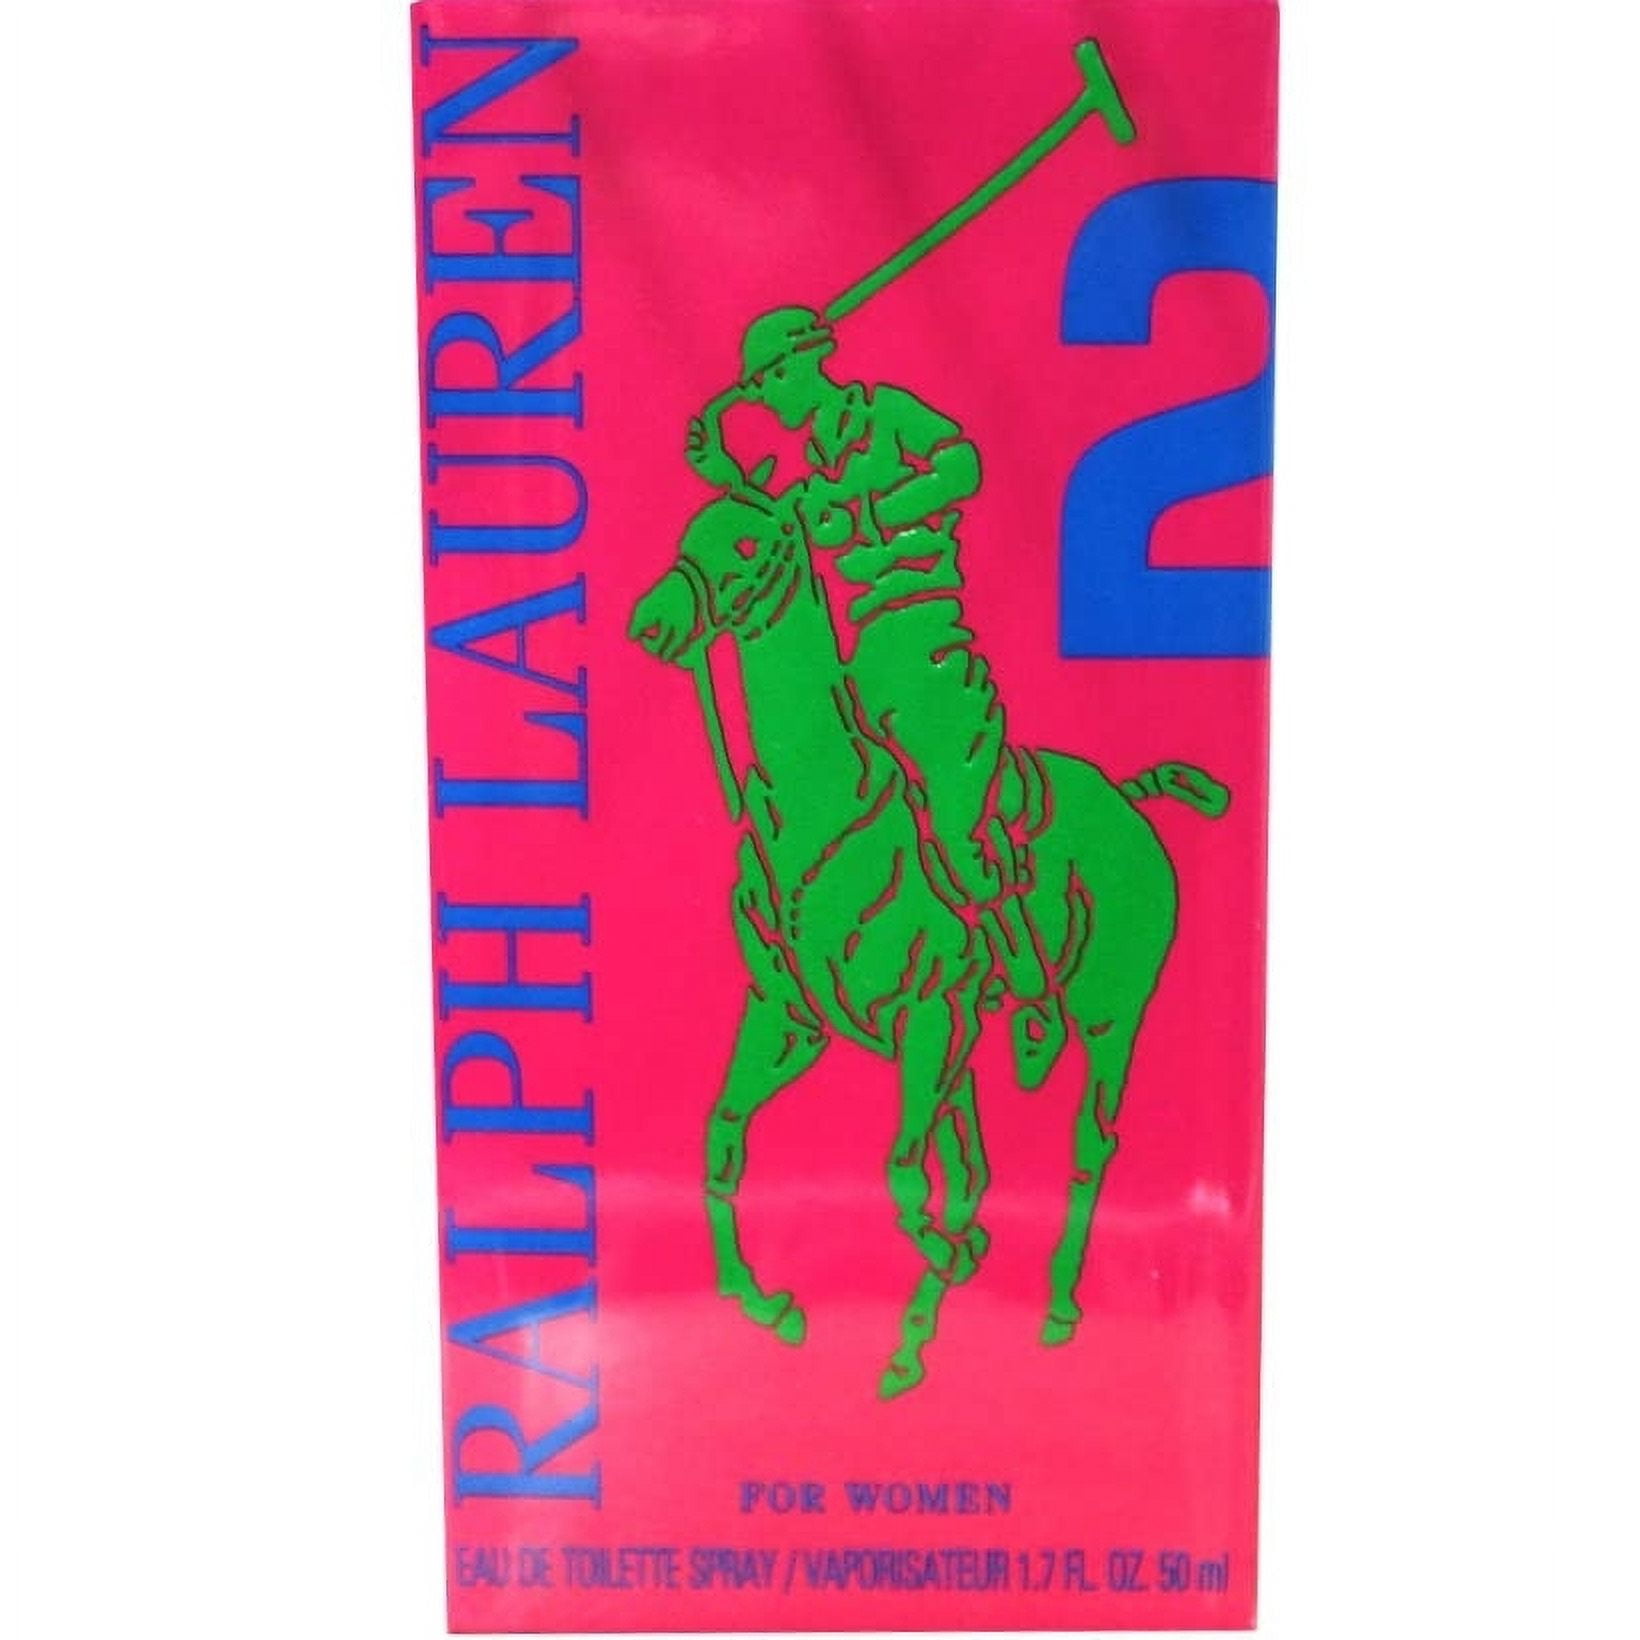 Ralph Lauren Big Pony Pink #2 Eau de Toilette Spray - 3.4 fl oz bottle